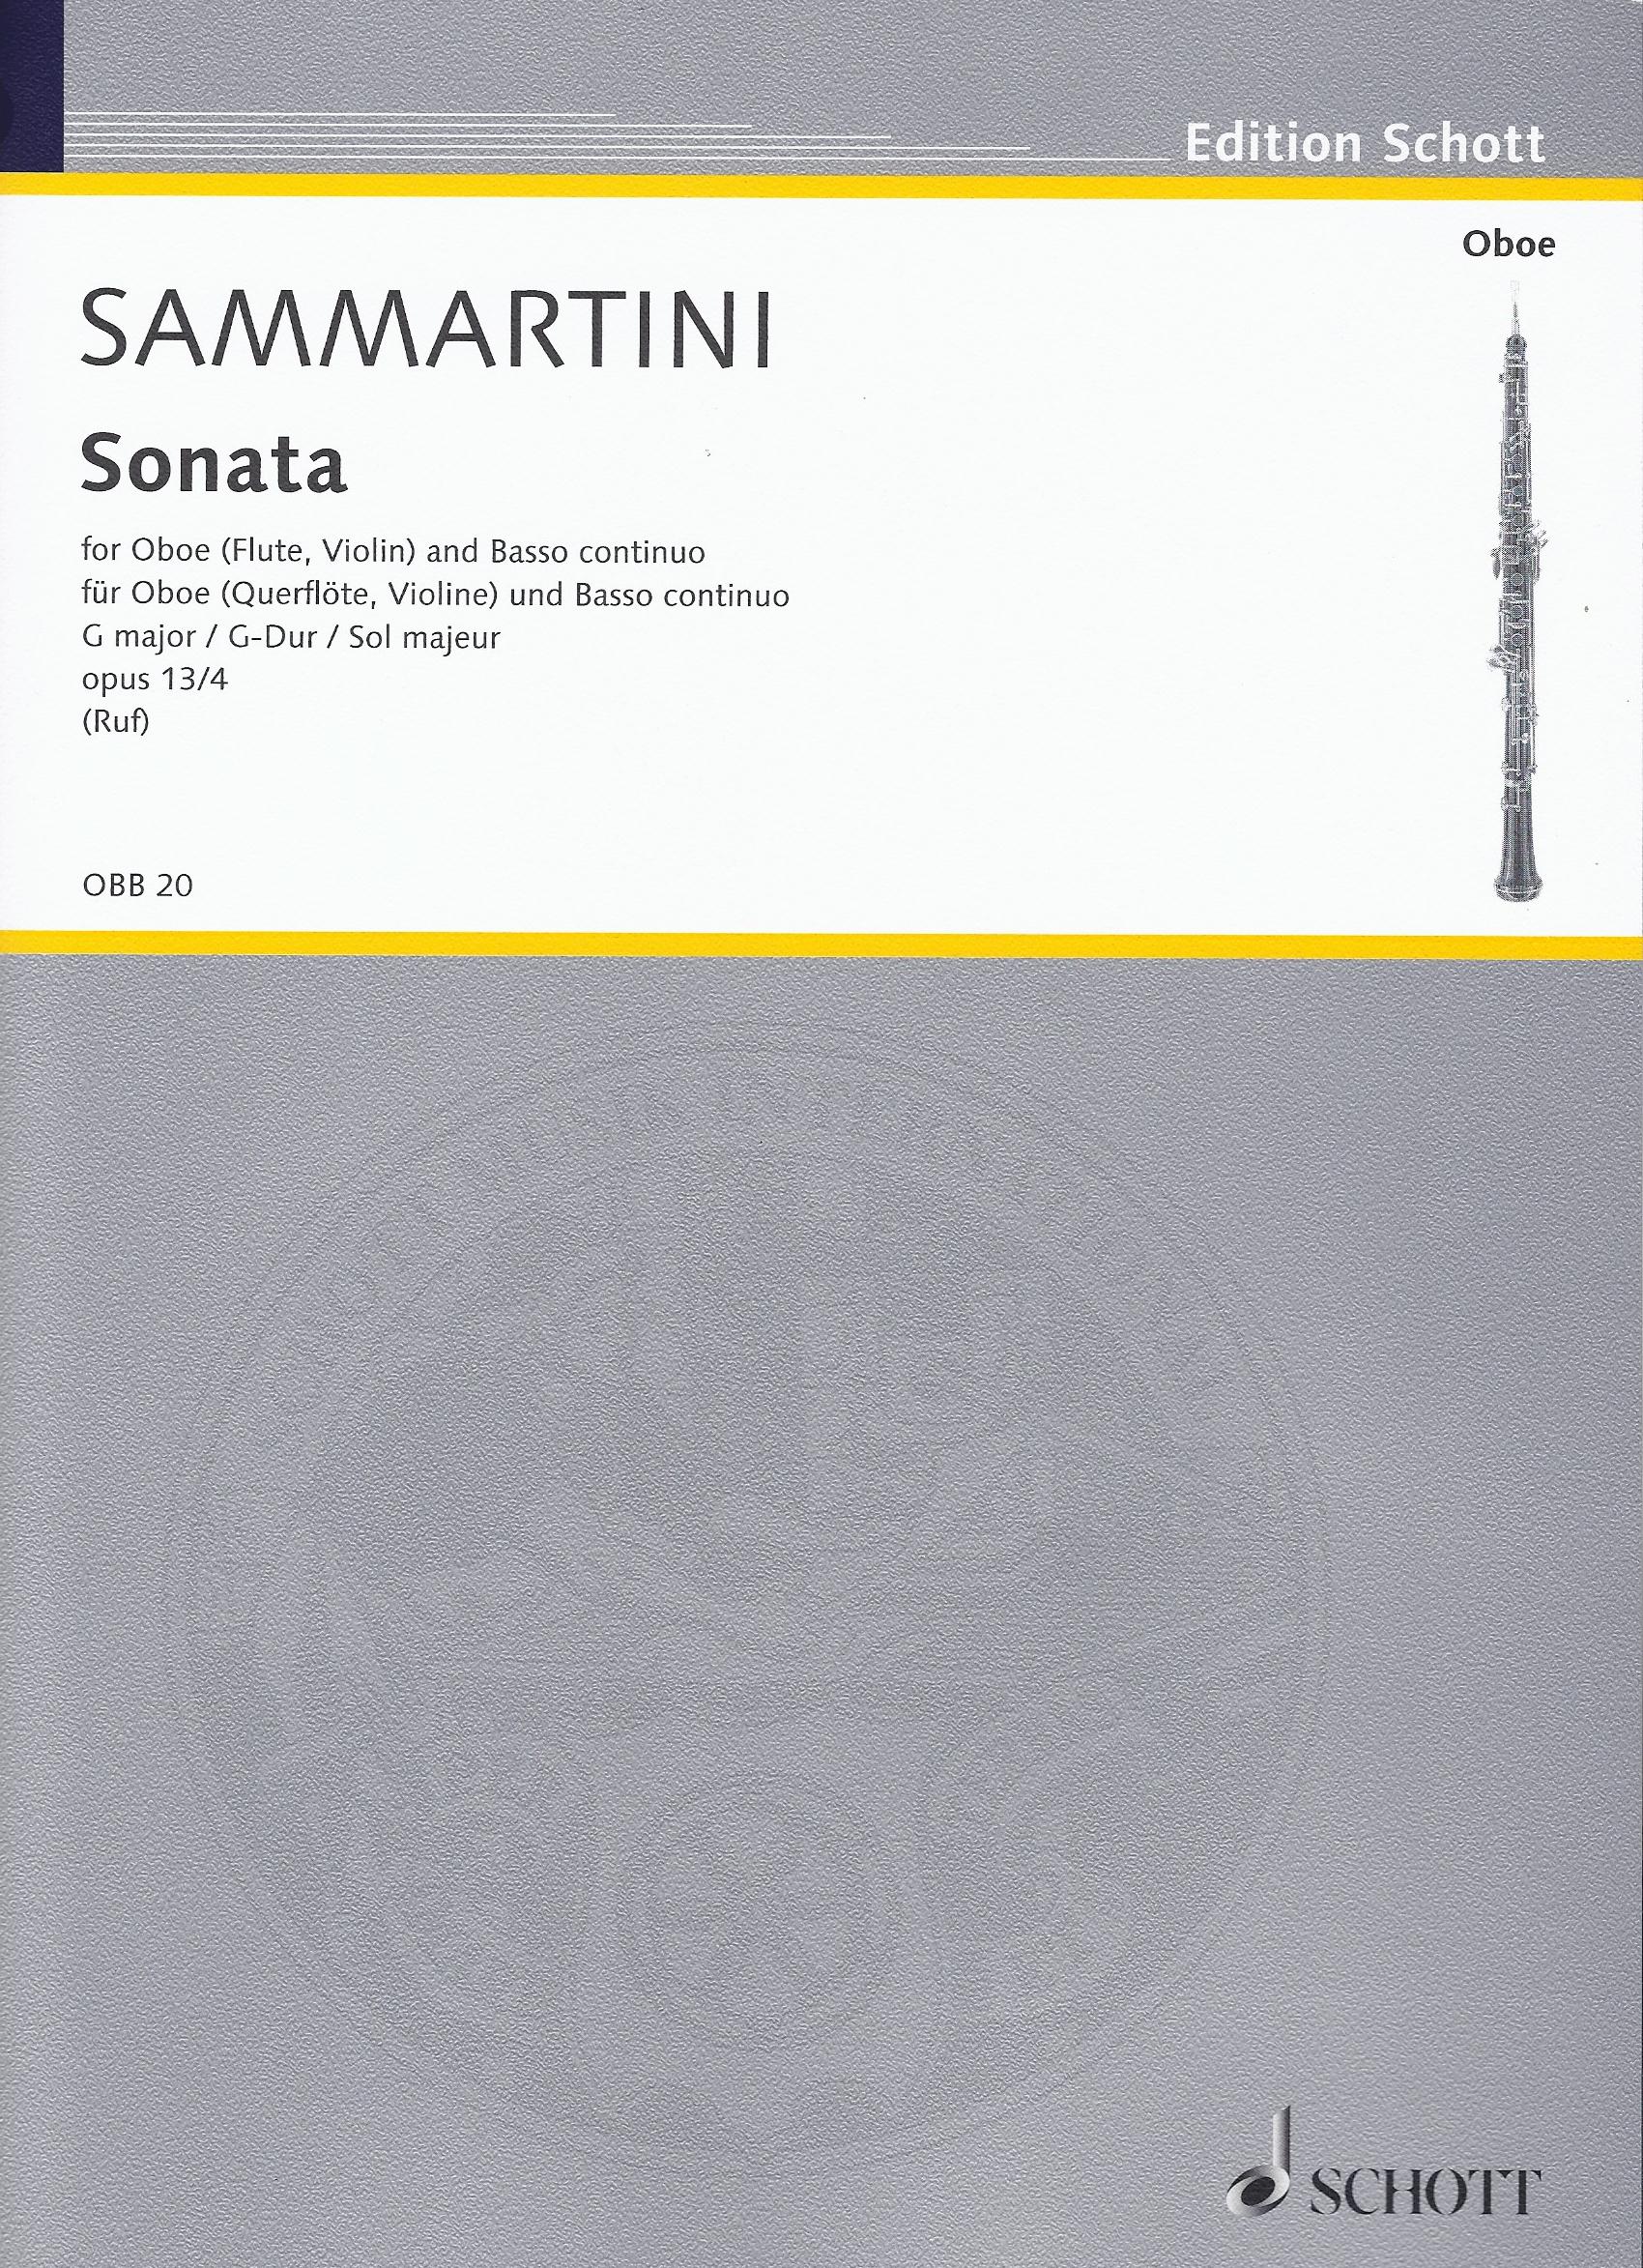 Giovanni Battista Sammartini: Sonata in G major Op. 13/4: Oboe: Score and Parts